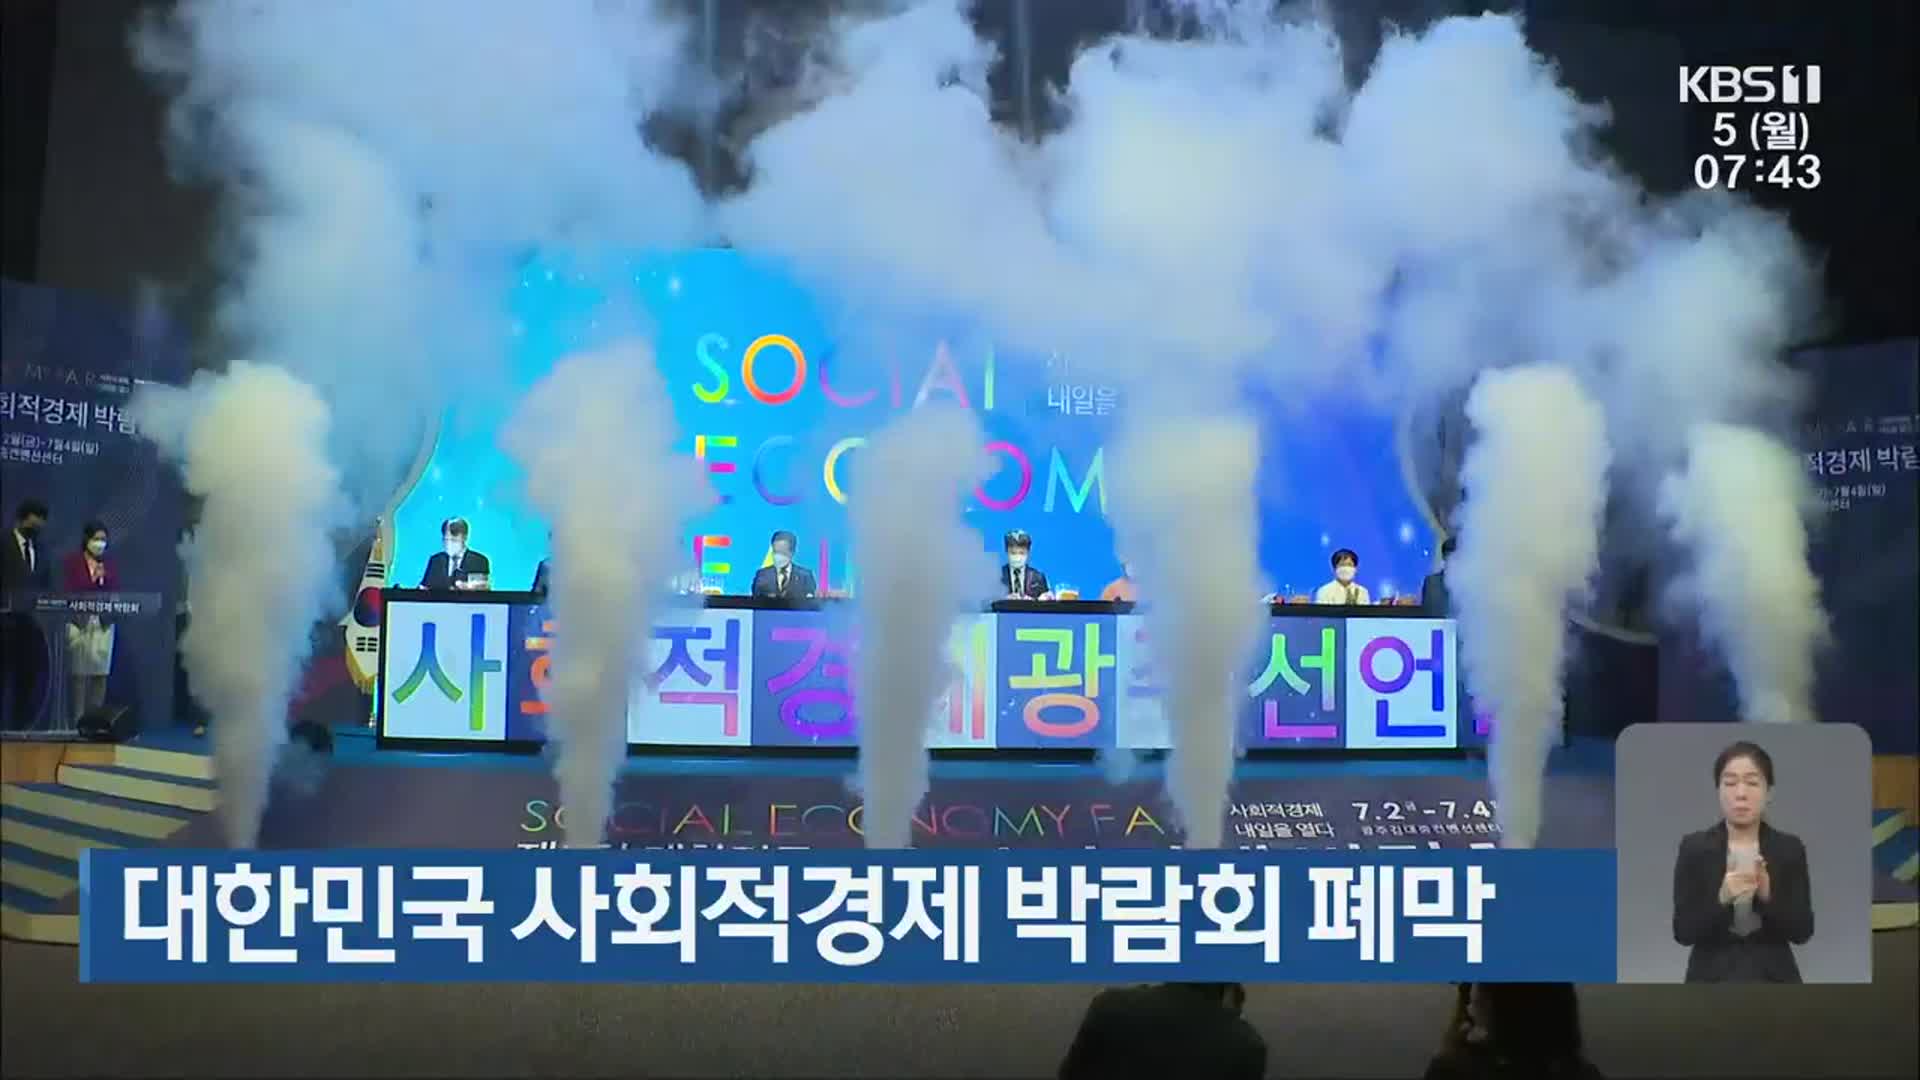 대한민국 사회적경제 박람회 폐막